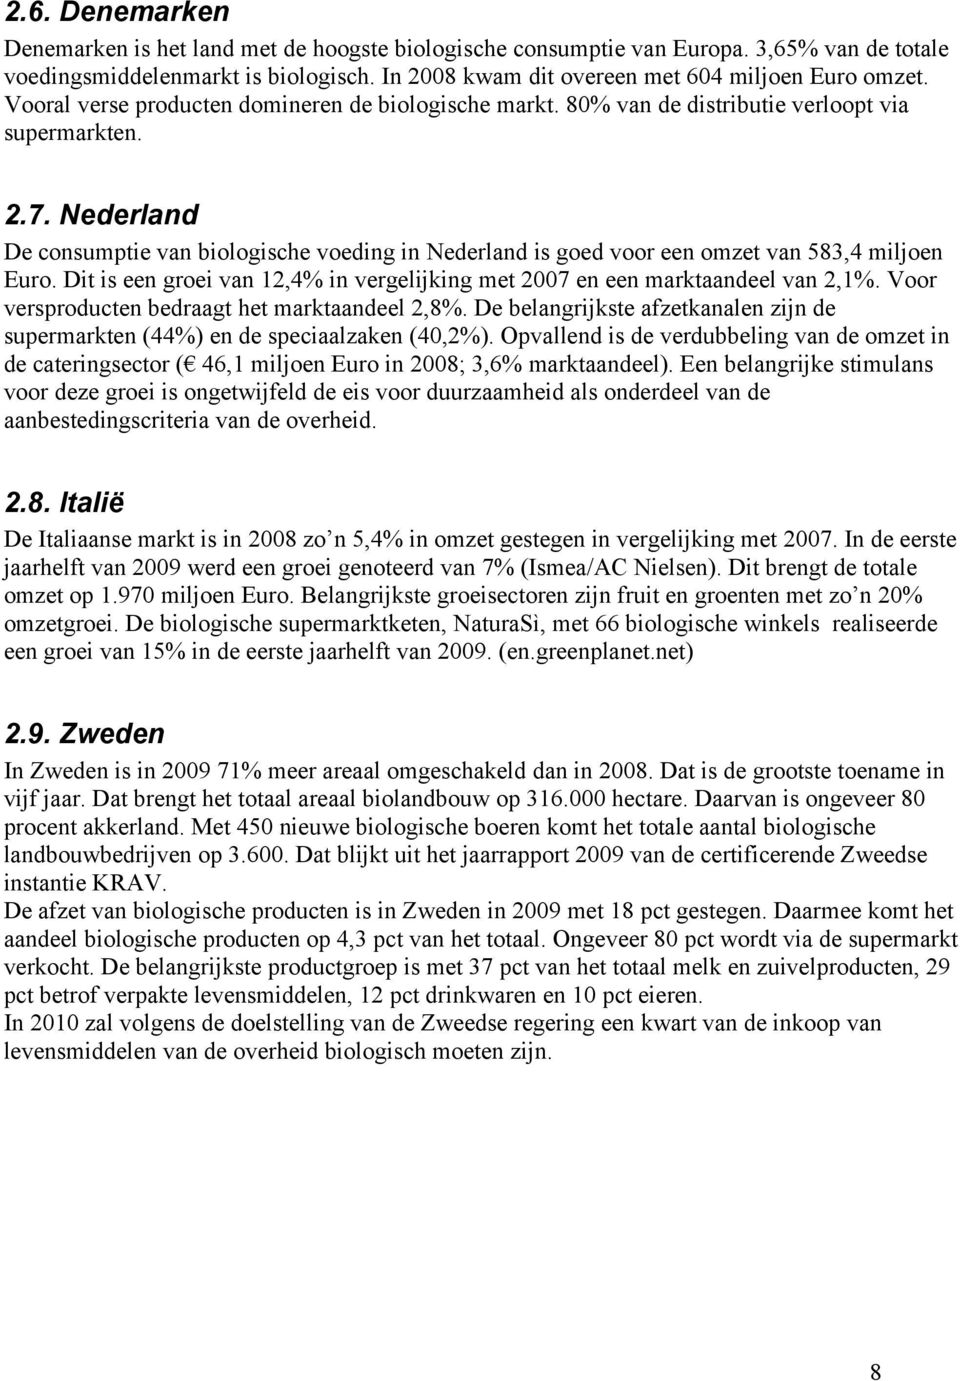 Nederland De consumptie van biologische voeding in Nederland is goed voor een omzet van 583,4 miljoen Euro. Dit is een groei van 12,4% in vergelijking met 2007 en een marktaandeel van 2,1%.